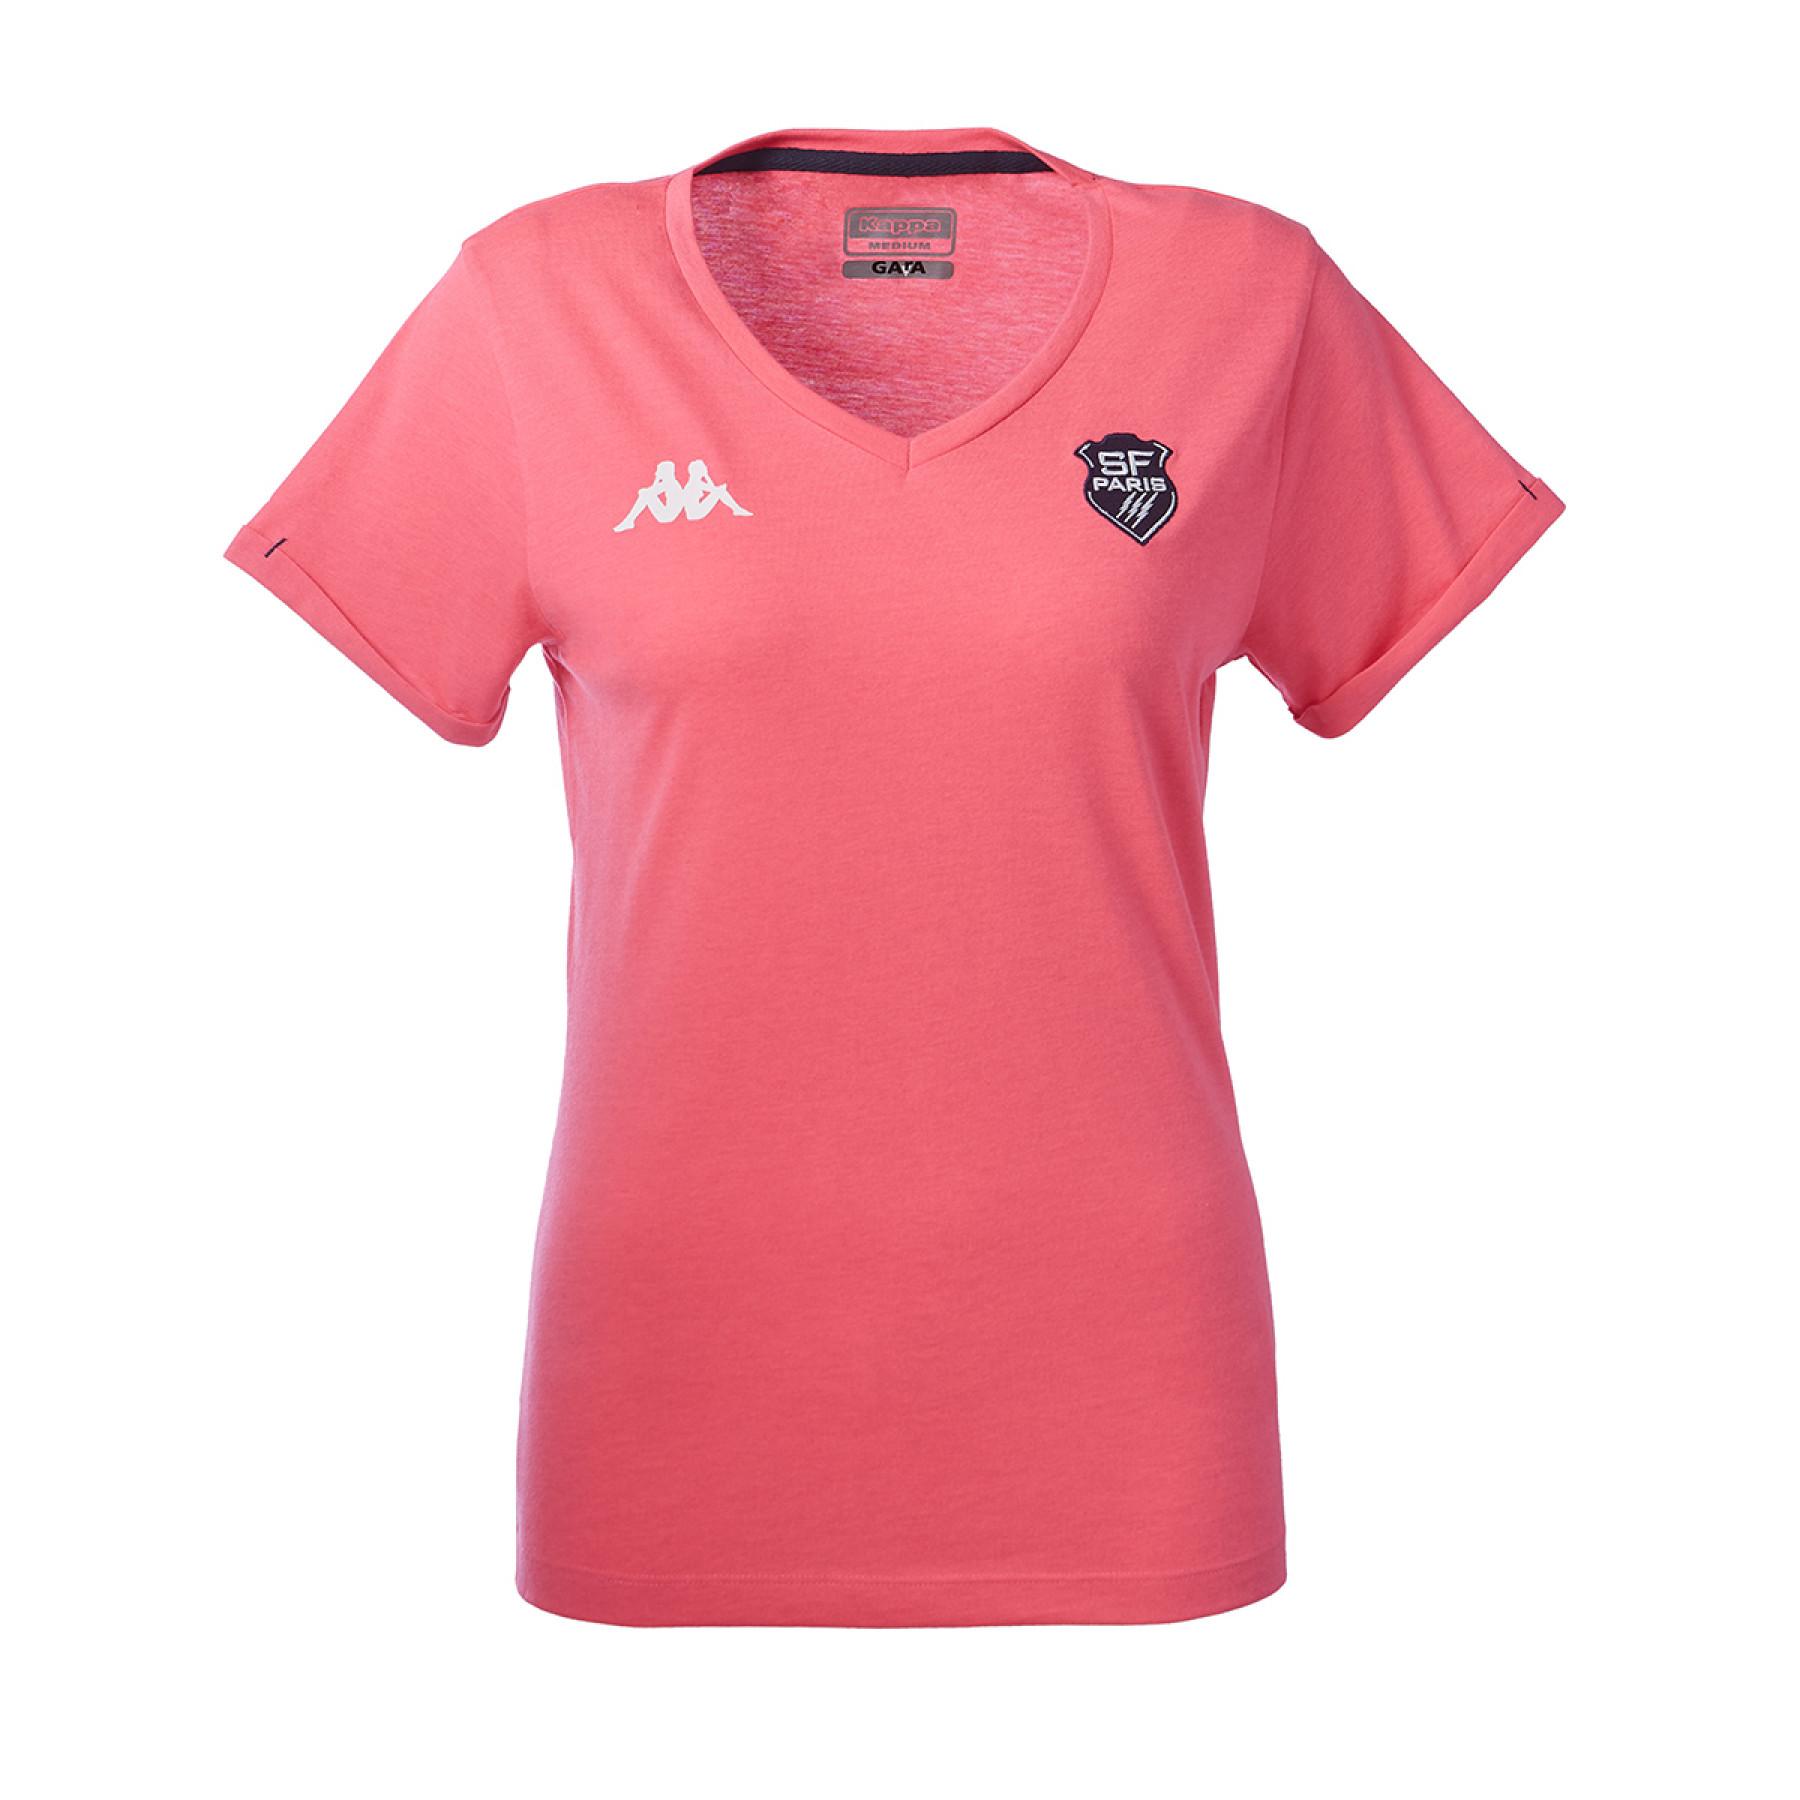 Camisa pólo feminina Stade Français 2020/21 lea